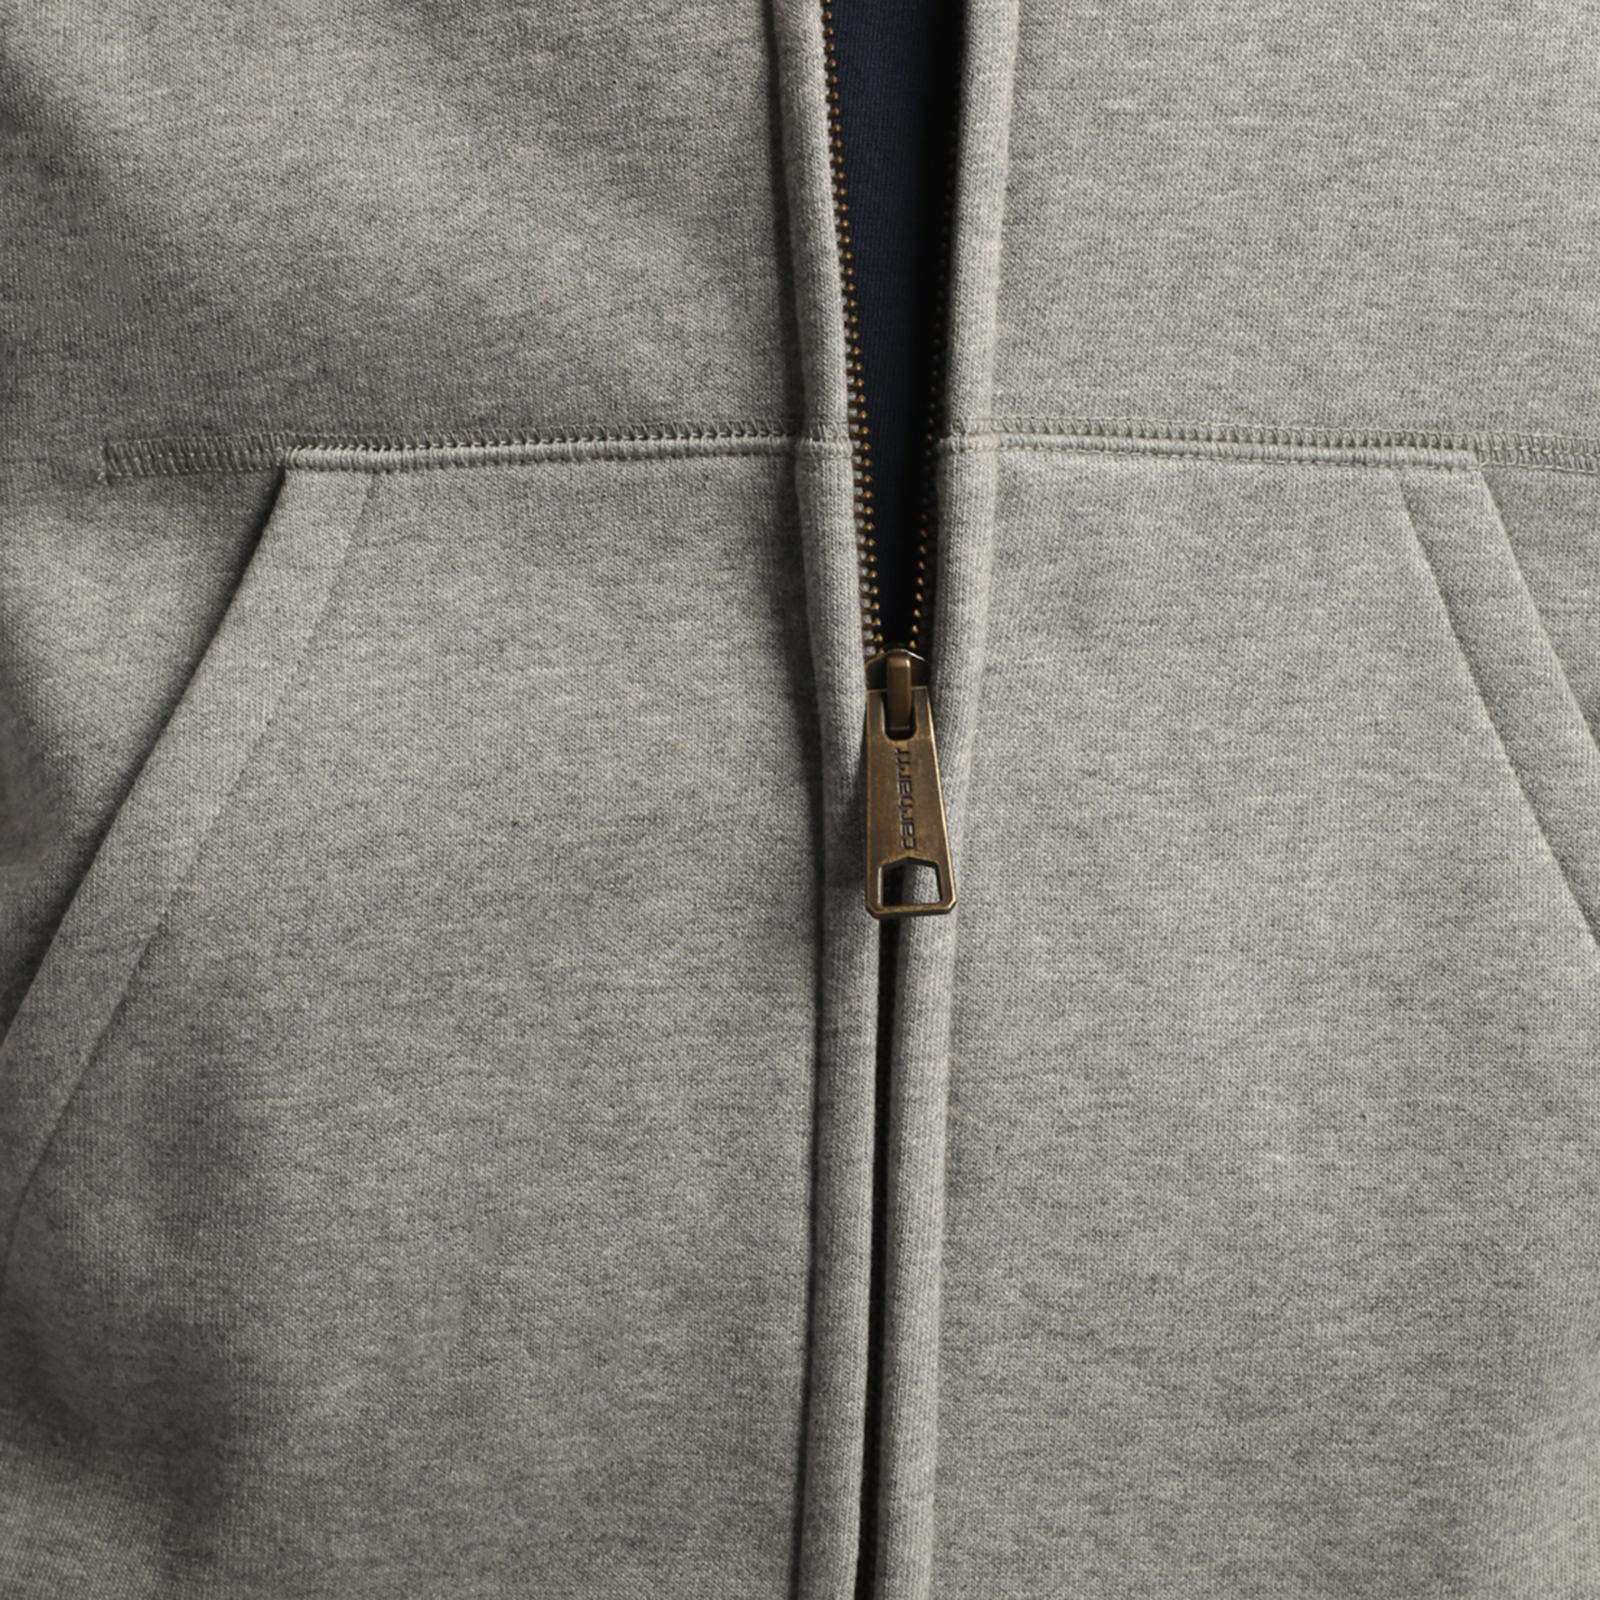 мужская серая толстовка Carhartt WIP Hooded Chase Jacket I026385-grey h/gold - цена, описание, фото 6